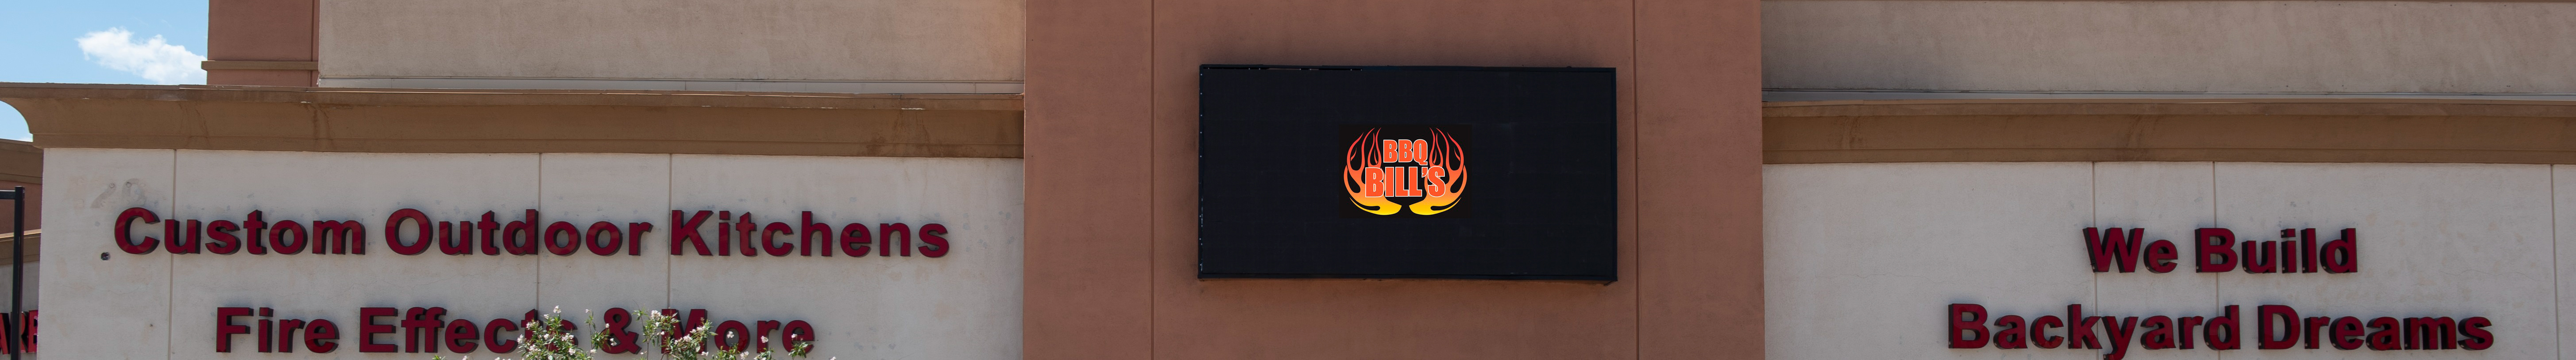 Profil-Banner von BBQ Bills Outdoor Living Store